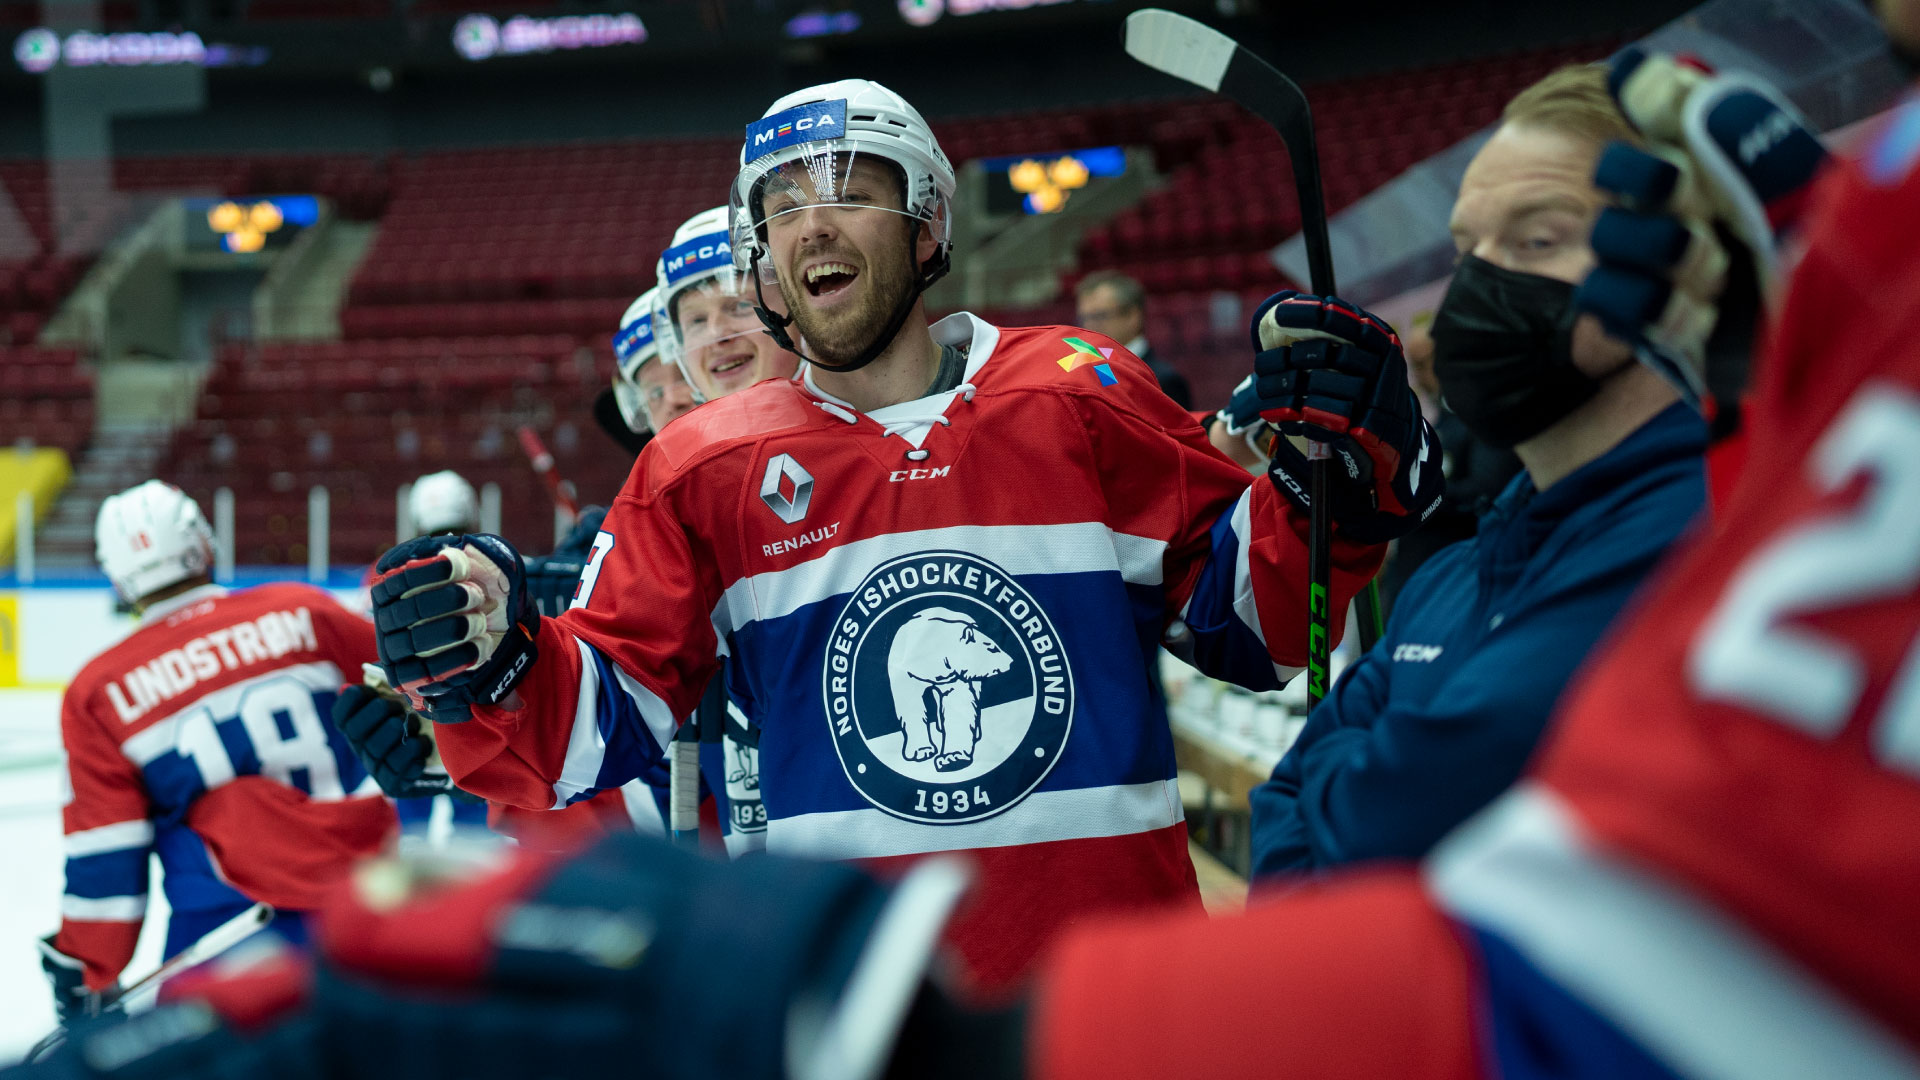 Foto: Fredrik Hagen, Norges Ishockeyforbund